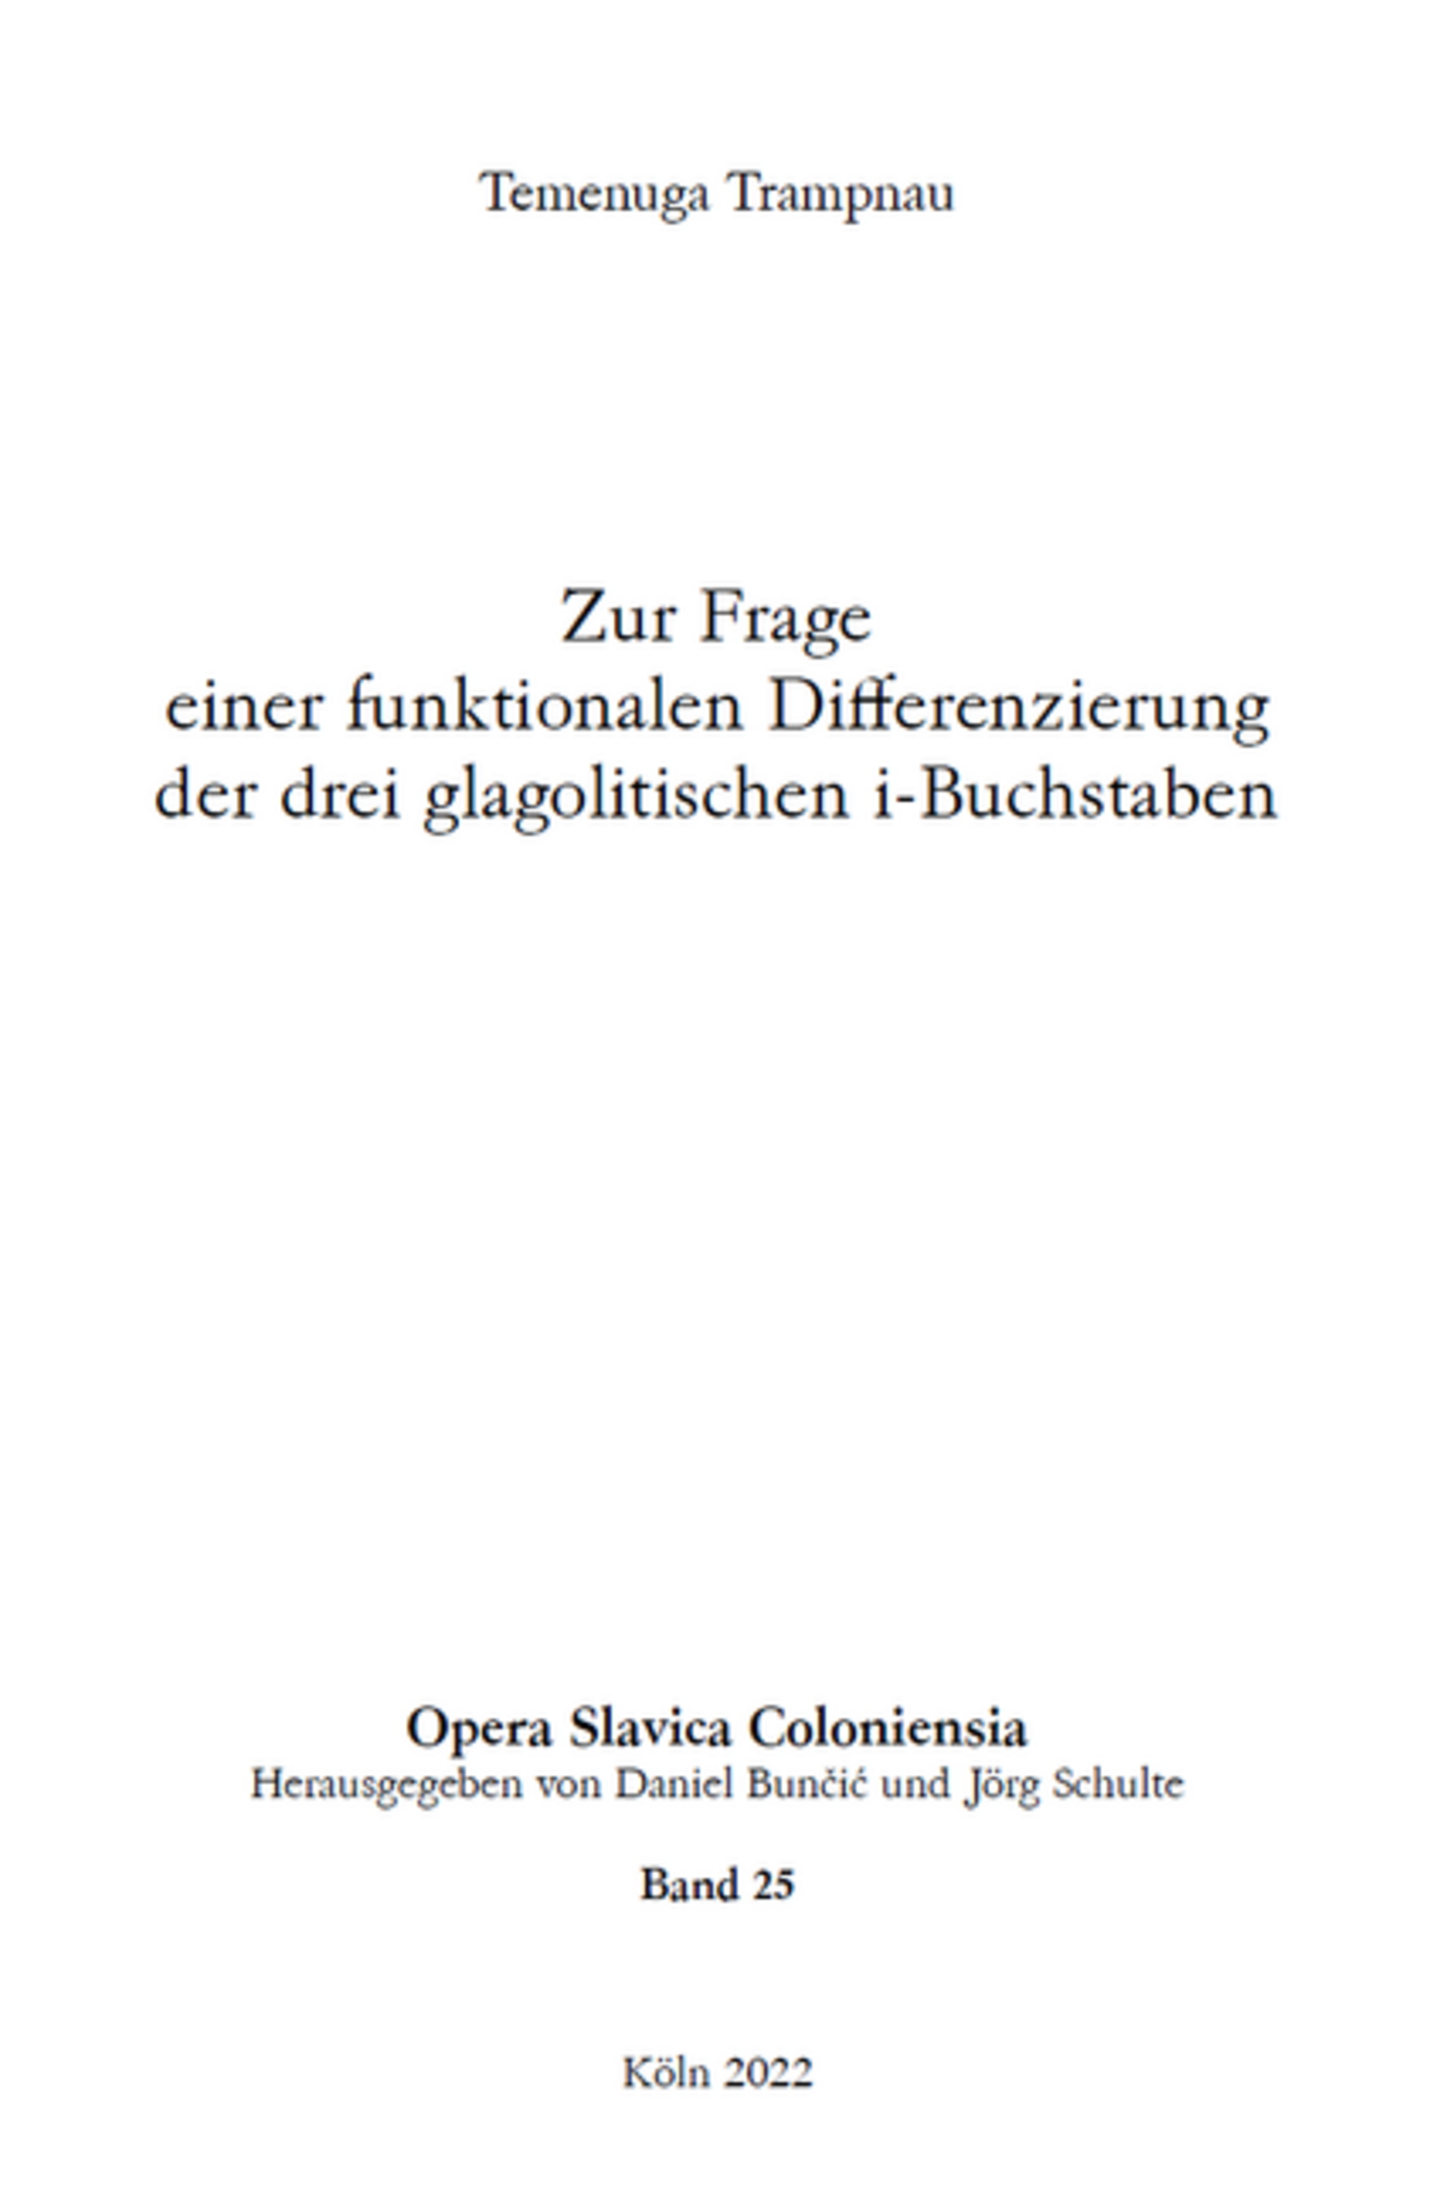 Opera Slavica Coloniensia, Bd. 25: Temenuga Trampnau (2022) Zur Frage einer funktionalen Differenzierung der drei glagolitischen i-Buchstaben